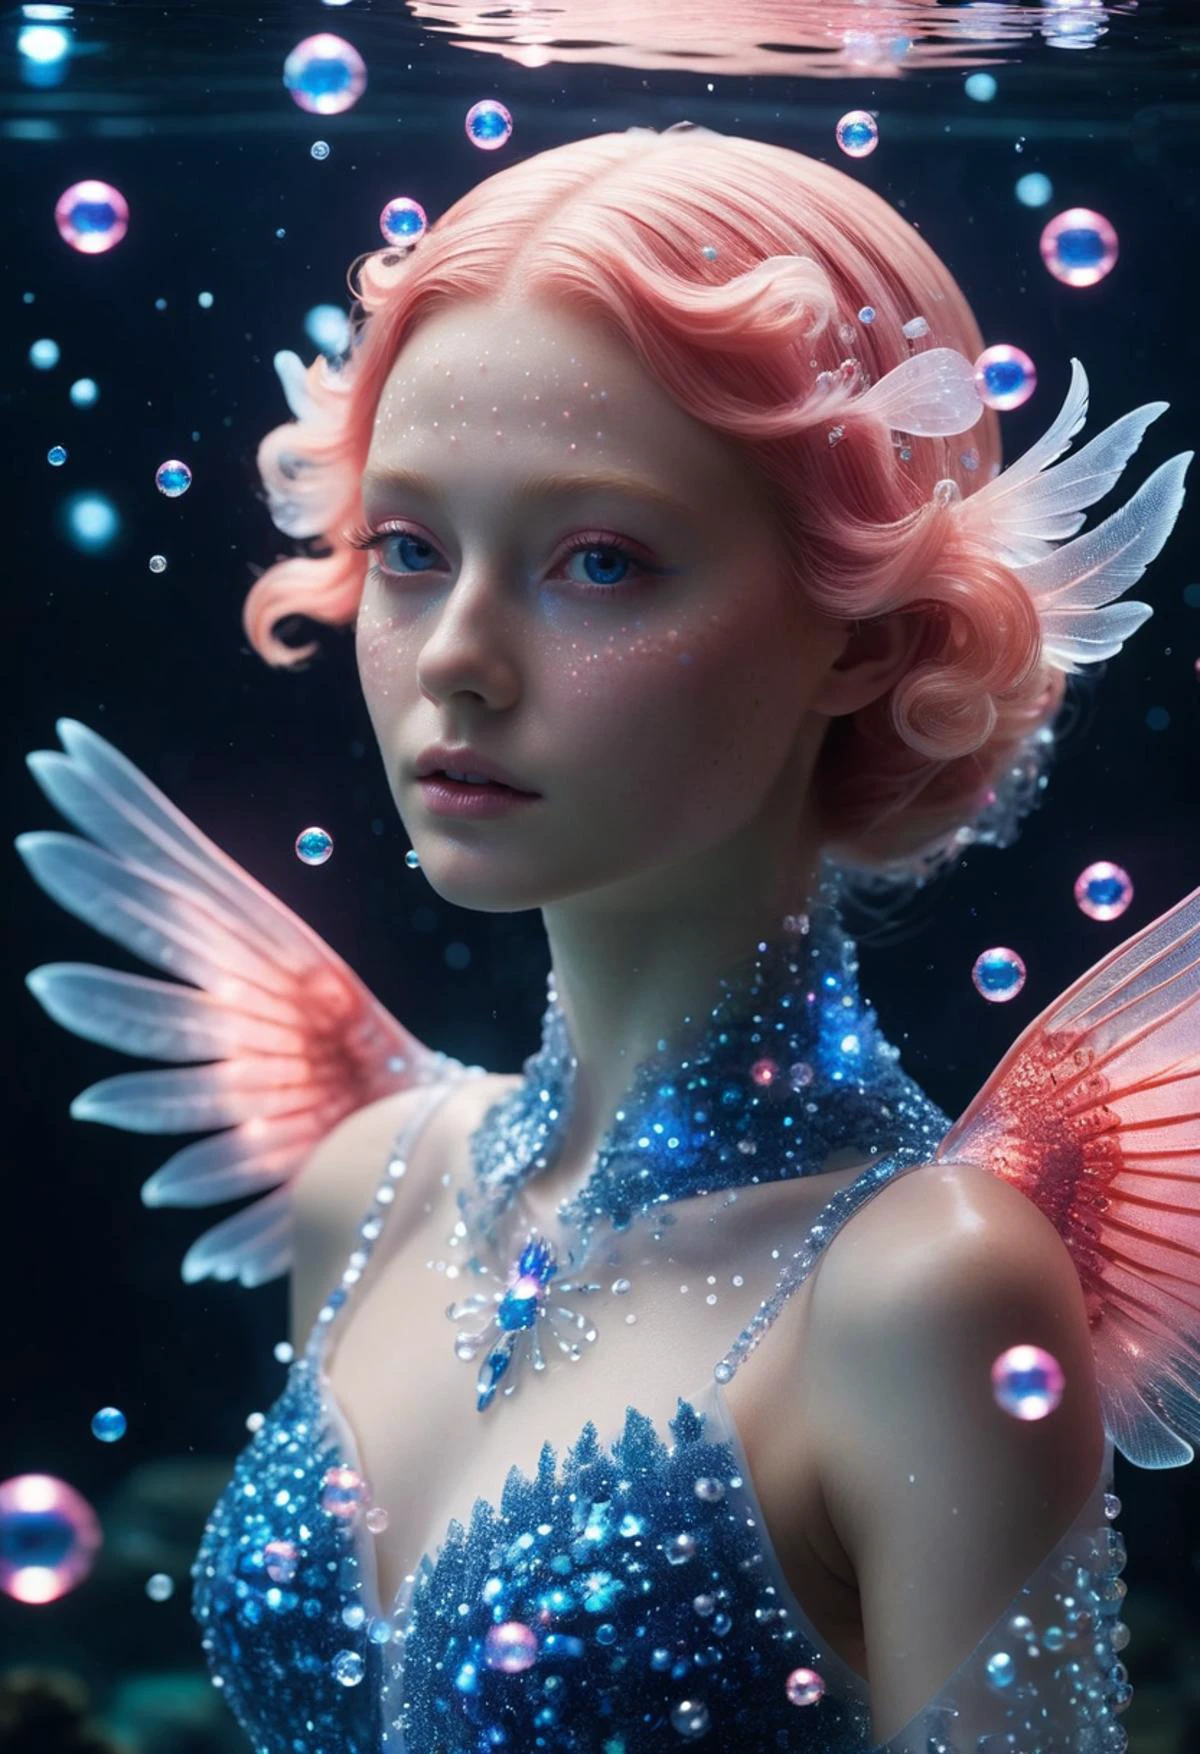 مخلوق مرجاني, بشرة شفافة متوهجة, صورة مقربة,  أجنحة,مع جزيئات لامعة زرقاء ووردية تتلألأ حول جسدها, فقاعات,  تحت الماء, غامضة وجميلة جماليا,رائع,رائع, مادوكا النهائي